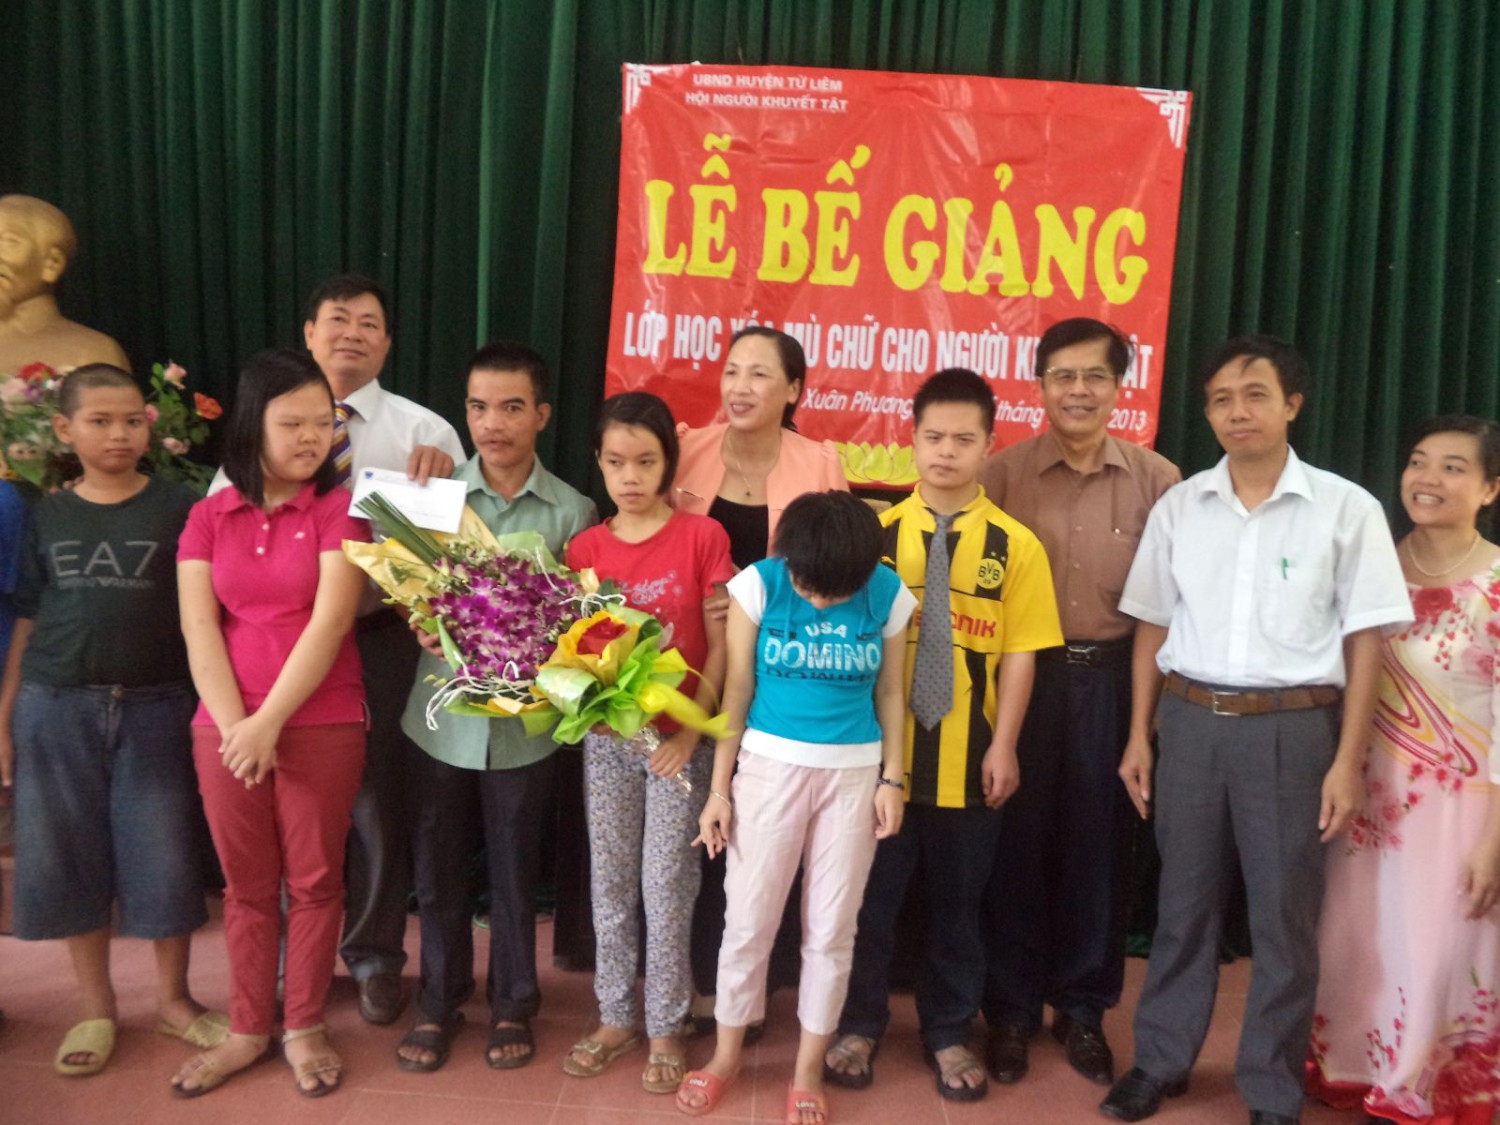 Quỹ Vì trẻ em khuyết tật tới dự lễ bế giảng lớp xóa mù chữ cho người khuyết tật tại huyện Từ Liêm.